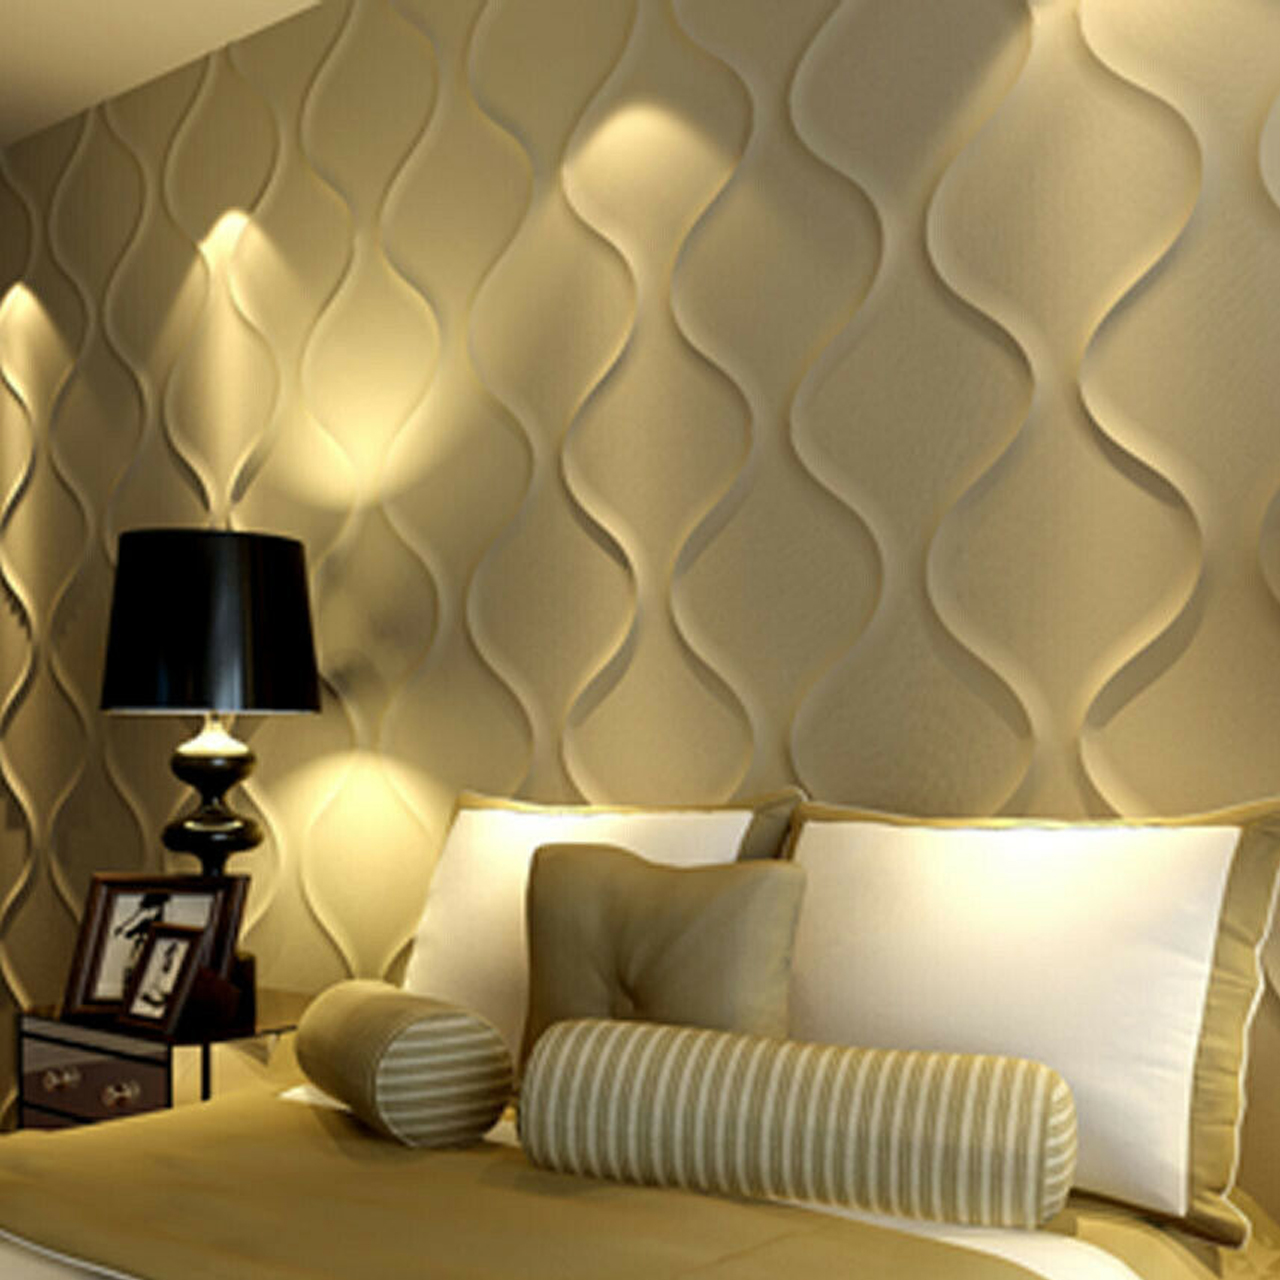 3d wallpaper,wall,room,wallpaper,interior design,furniture